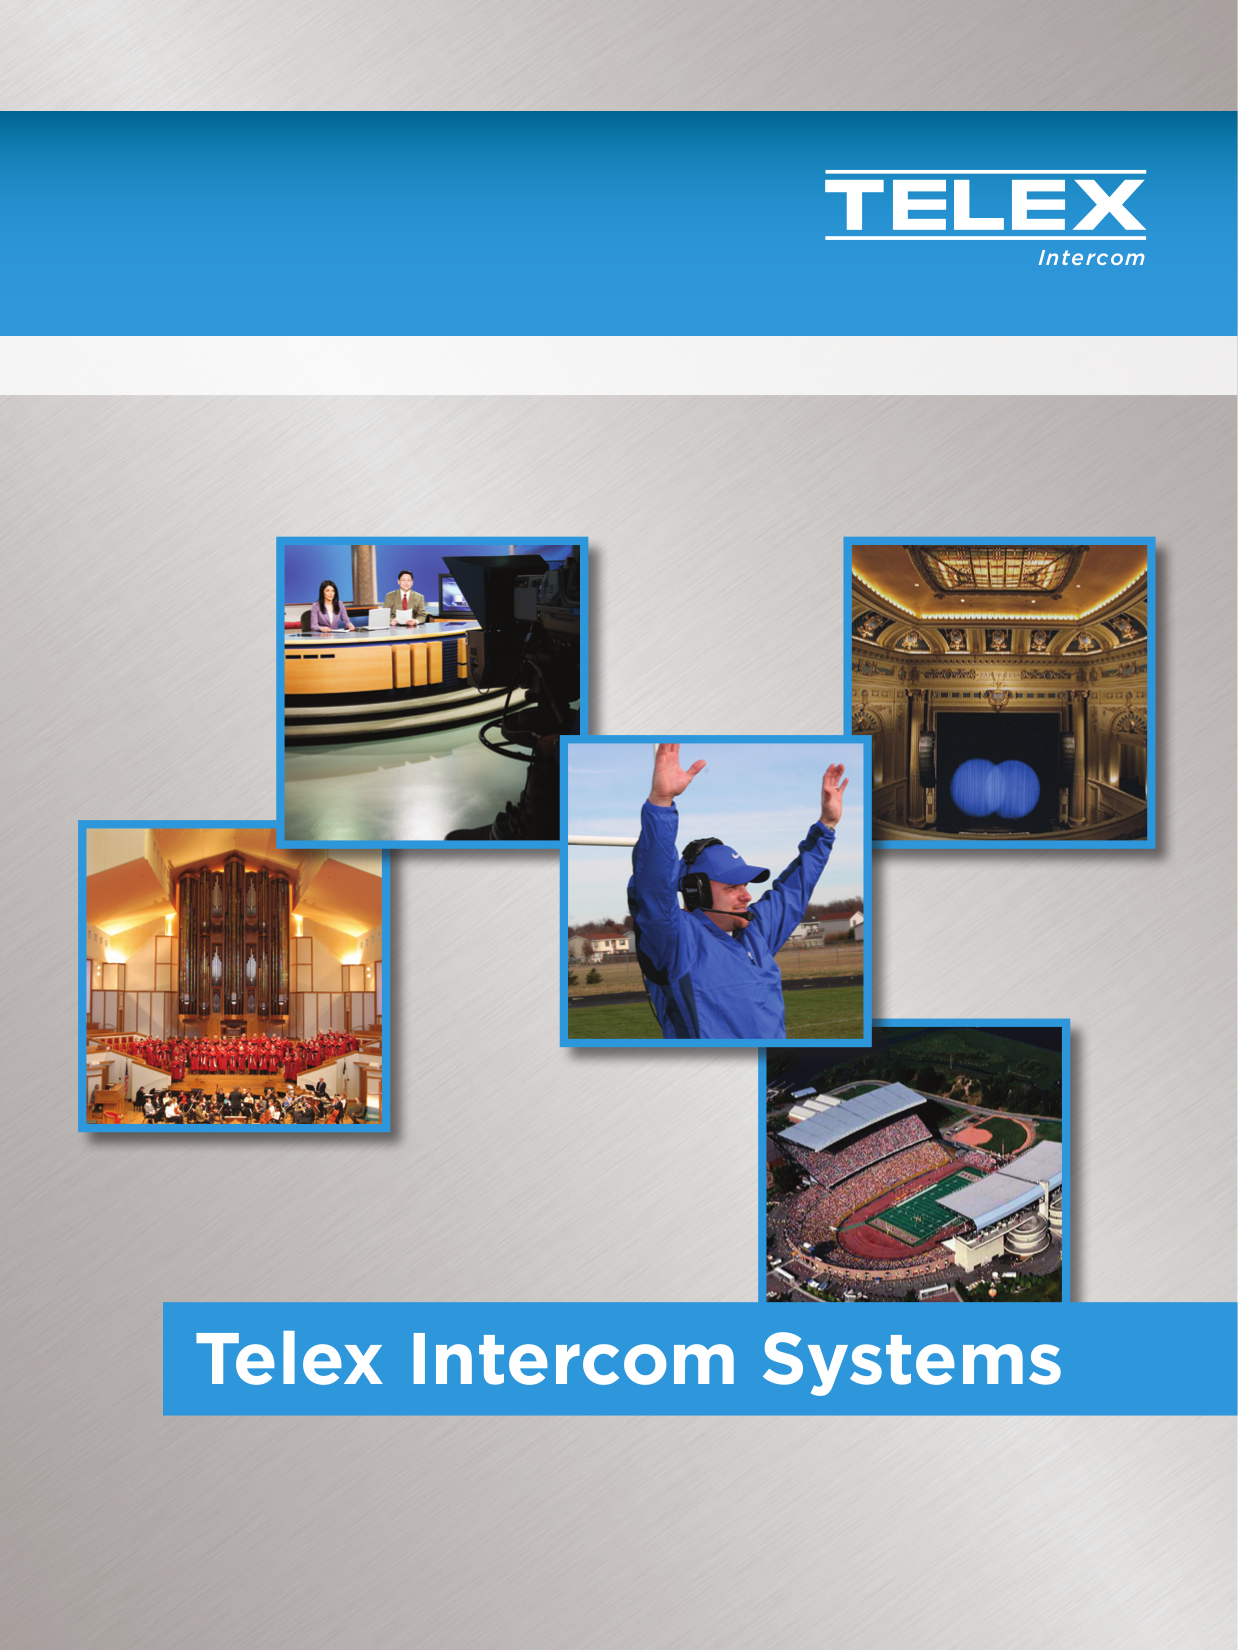 pdf for Telex Other TT-16 IFB Wireless manual